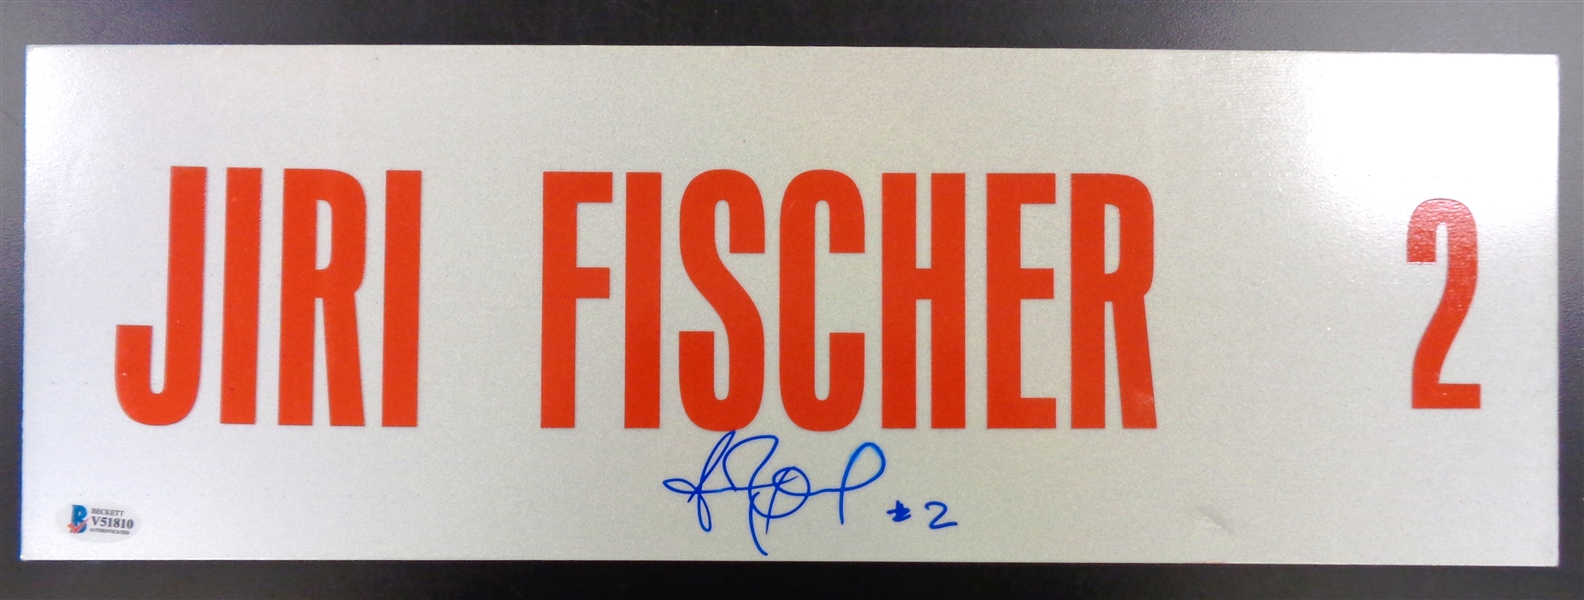 Jiri Fischer Autographed 6x18 Metal Street Sign